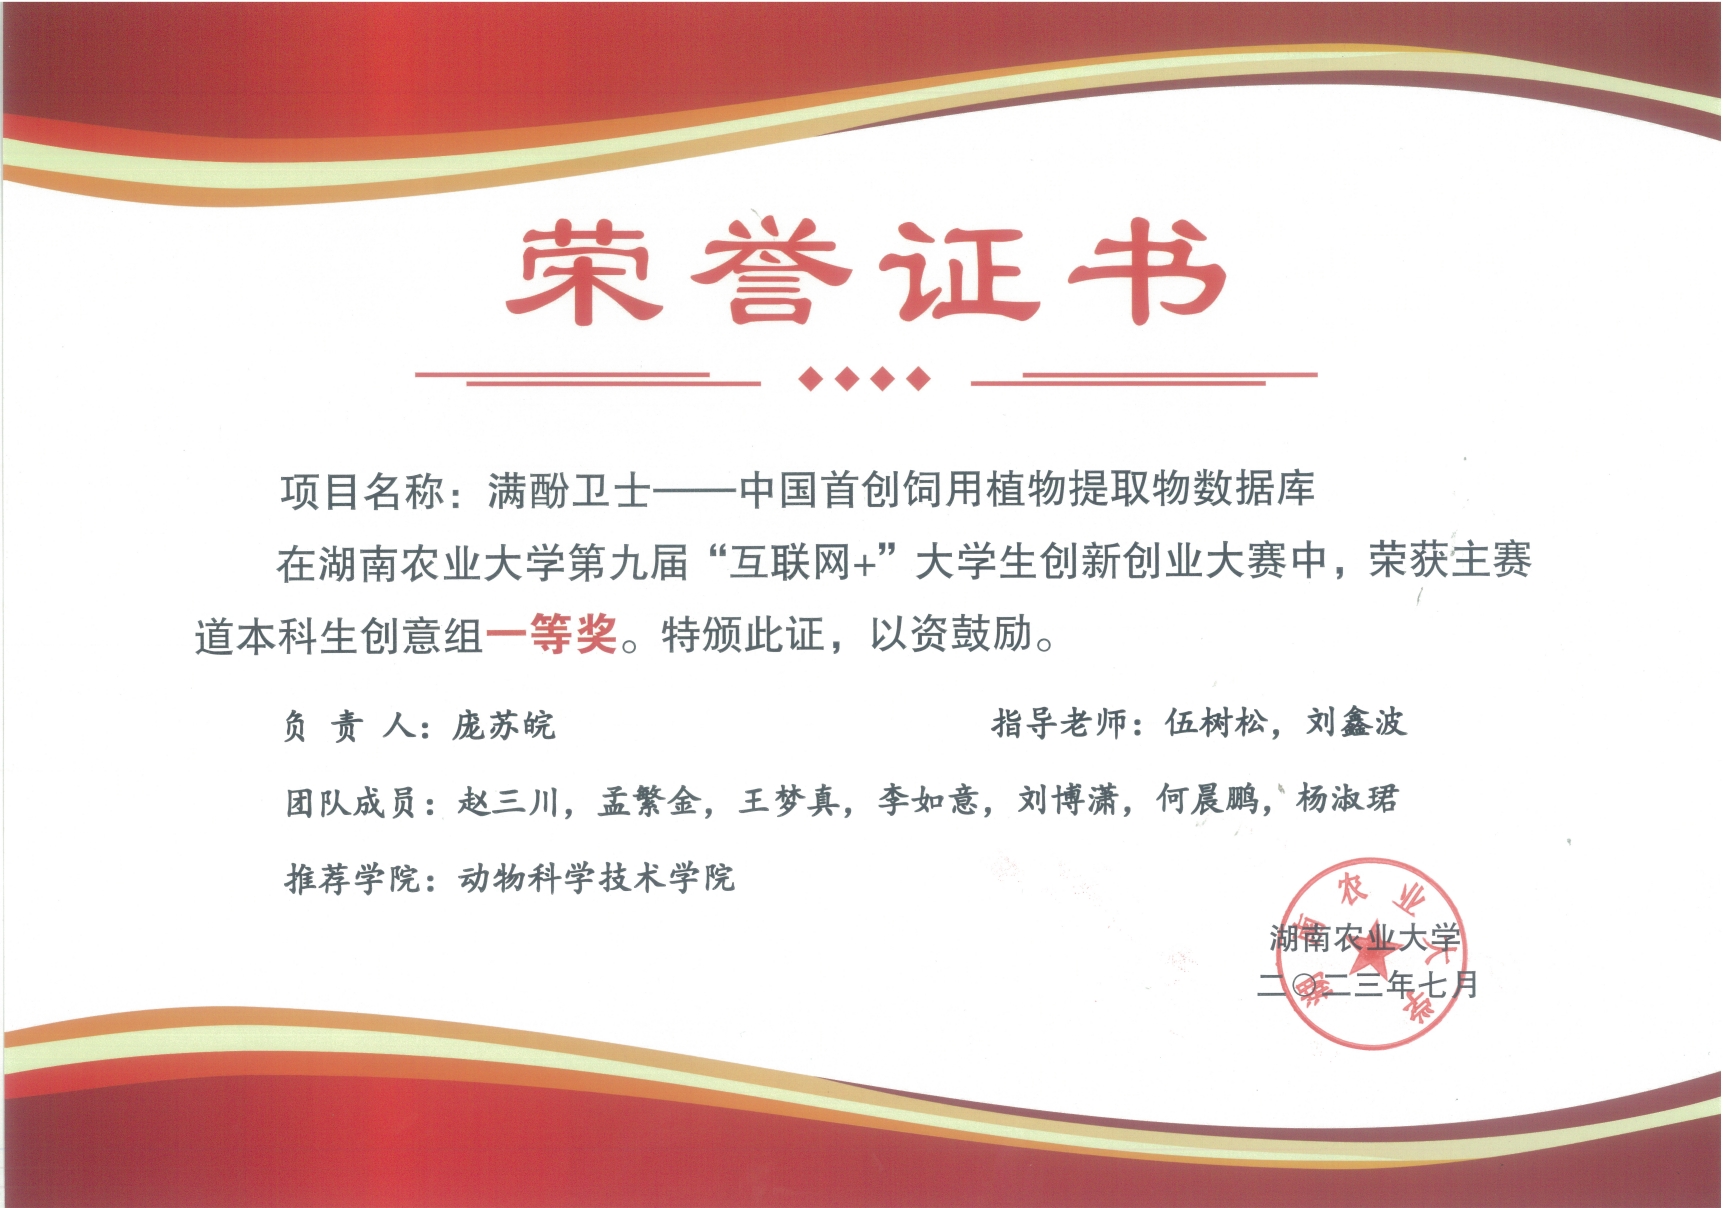 湖南农业大学第九届互联网+创新创业大赛优秀作品：满酚卫士——